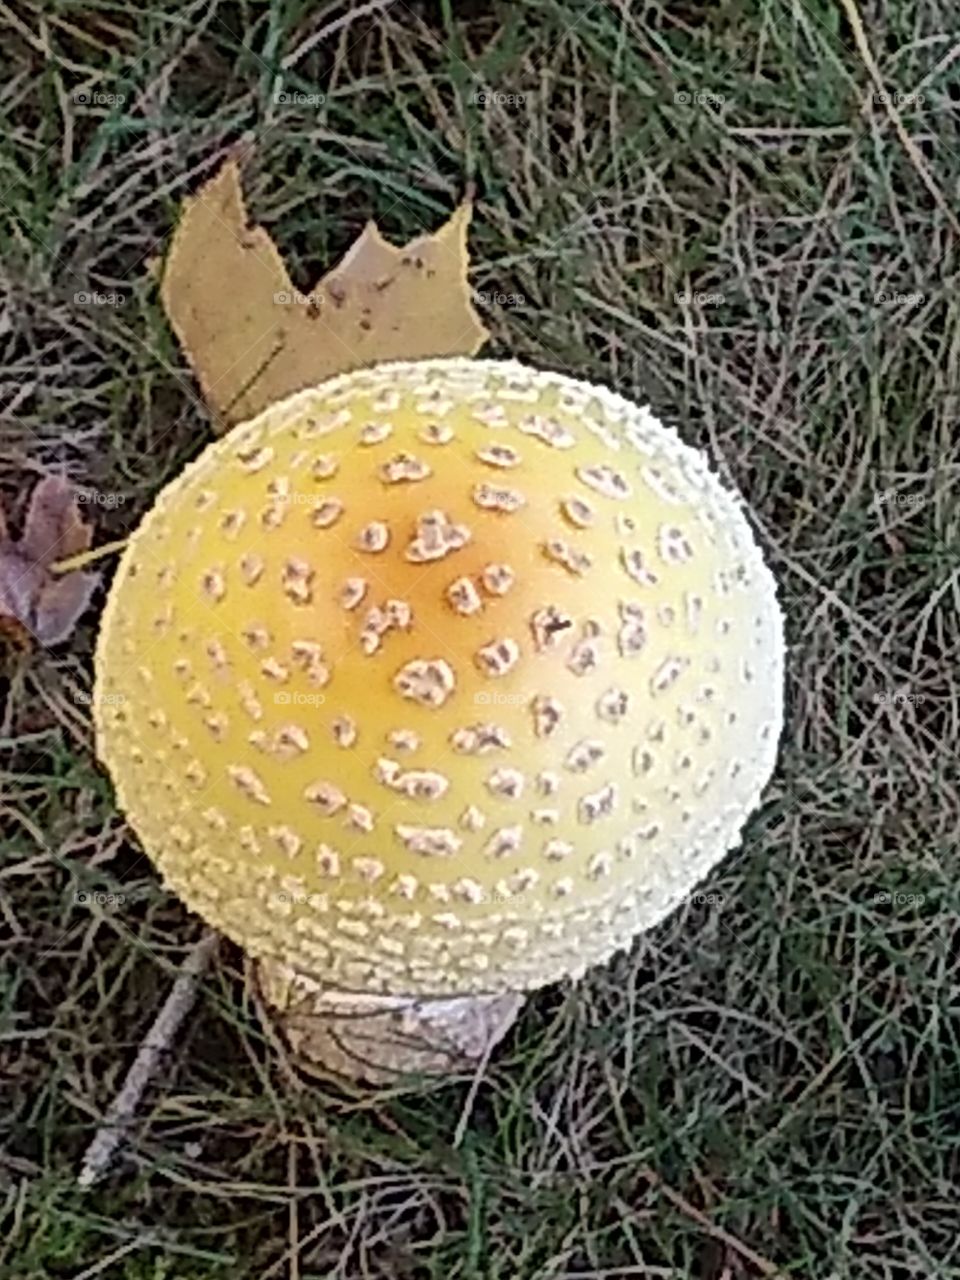 Fall mushroom